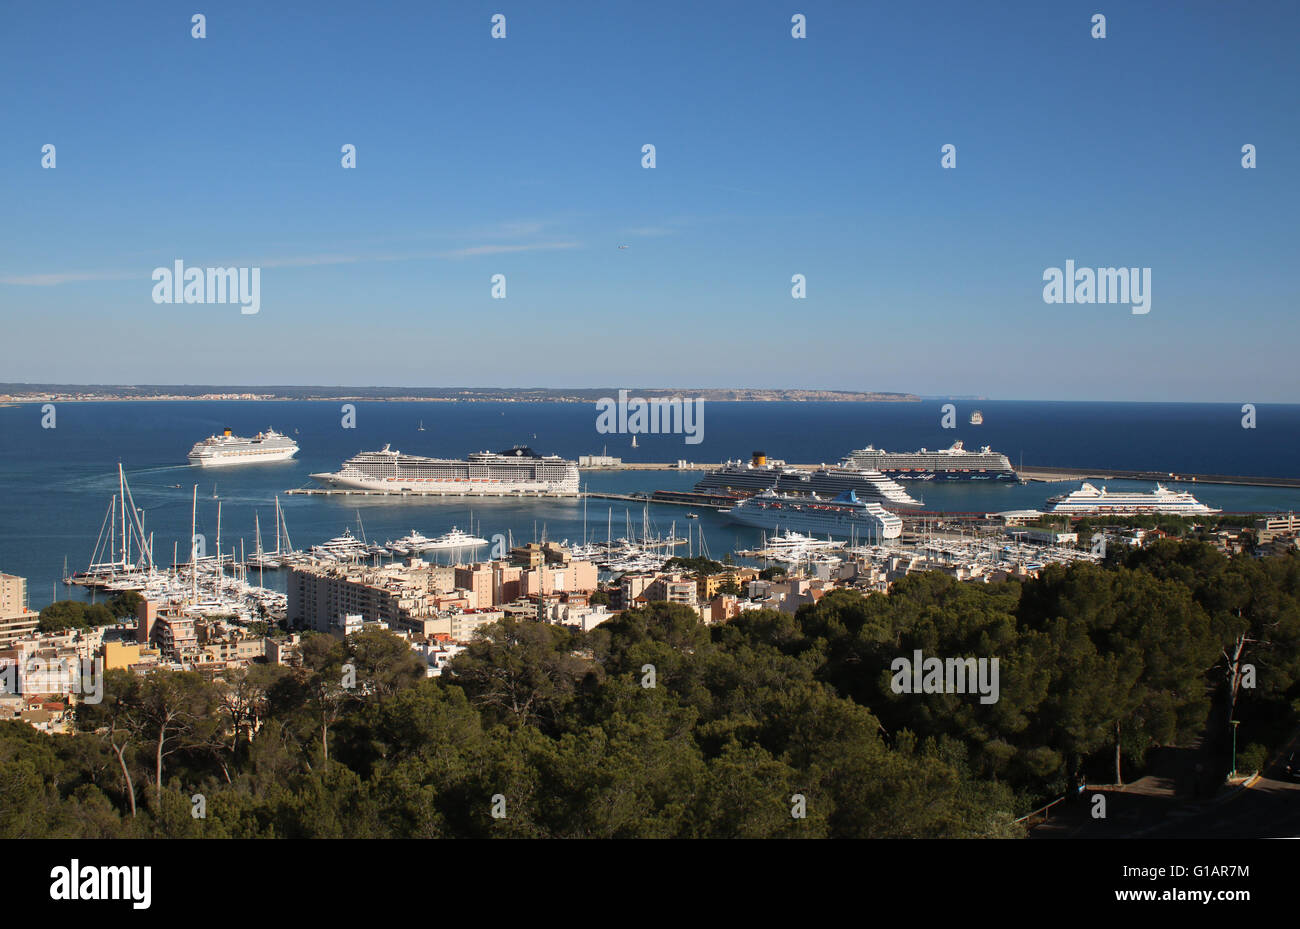 Départ de Costa Fascinosa (290 m) et de navires de croisière à voile "Royal Clipper" (133m) - avec six navires de croisière dans le port. Banque D'Images